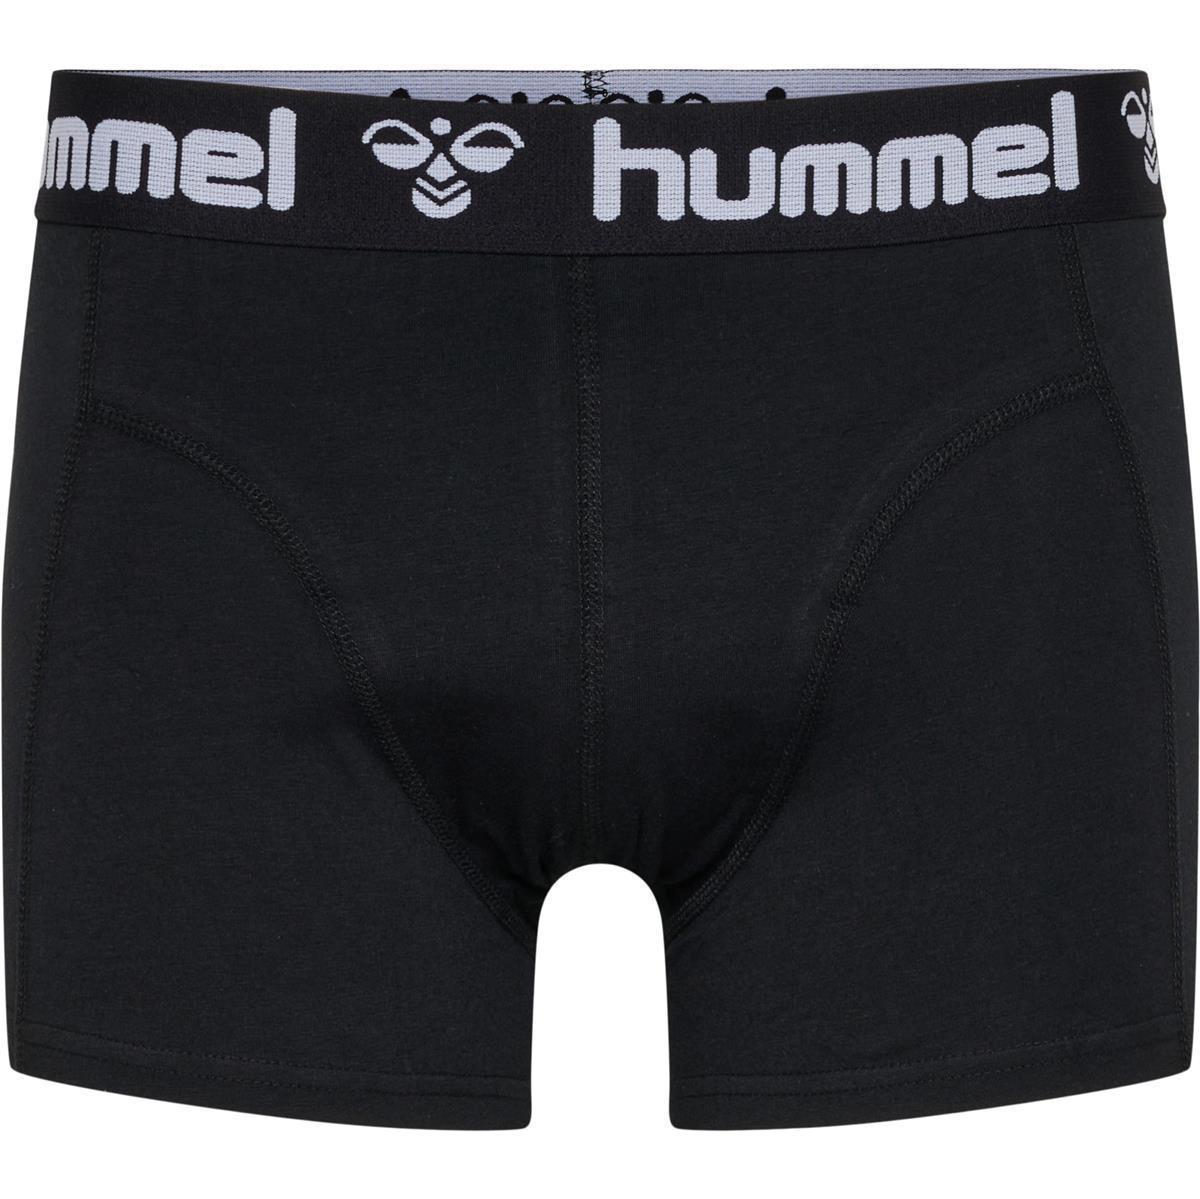 Hummel HMLMARS 2PACK BOXERS - BLACK/WHITE - S